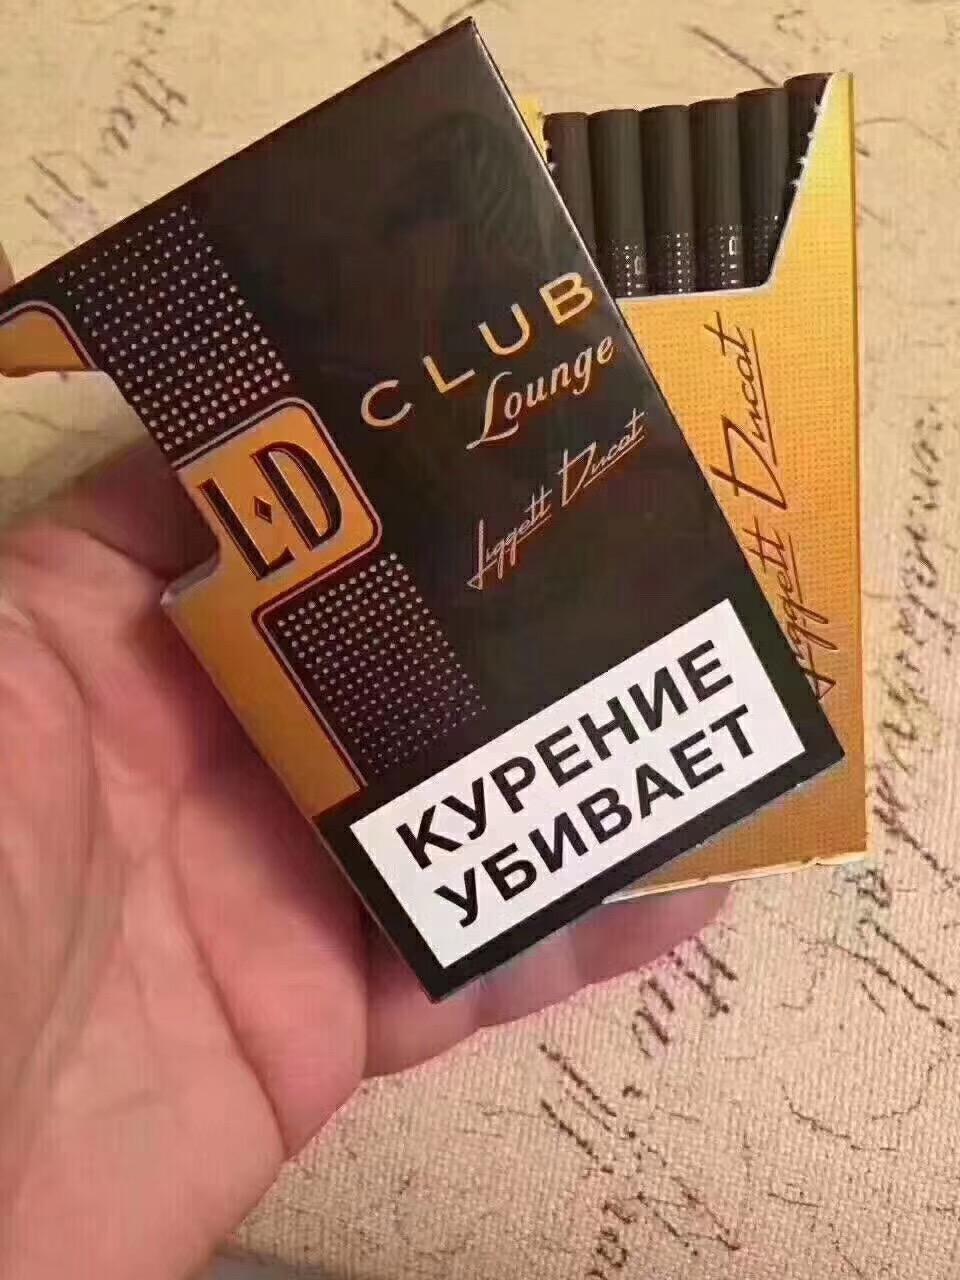 俄罗斯有那些烟好抽?